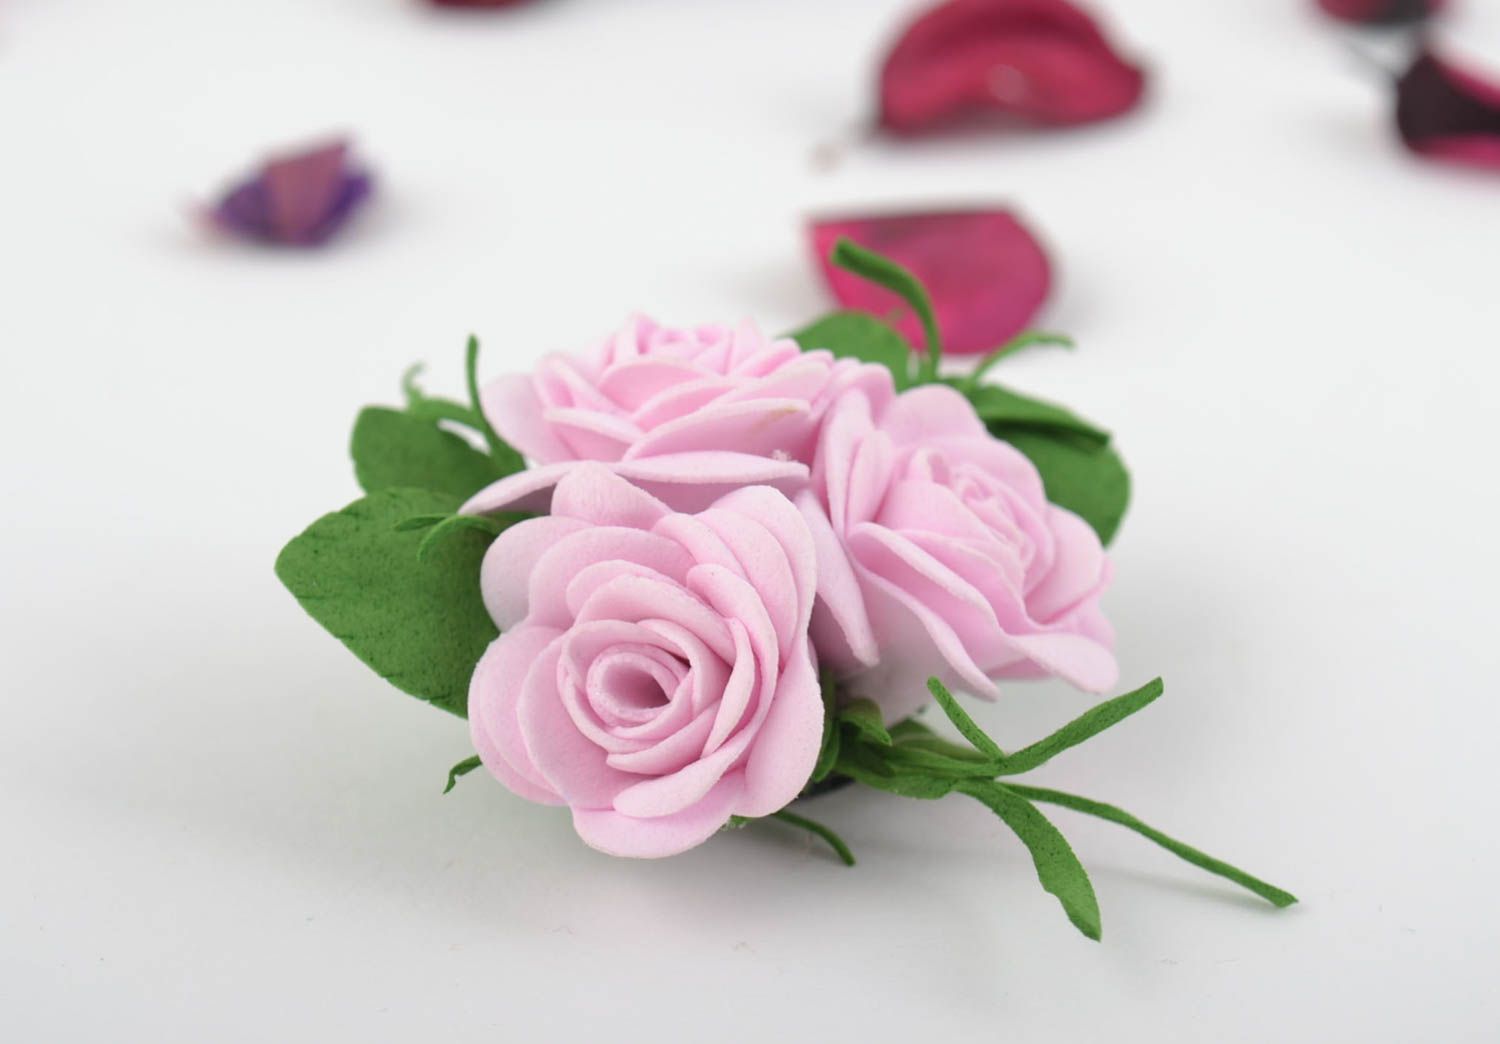 Авторская брошь из фоамирана с цветочками розовая нежная красивая ручной работы фото 1